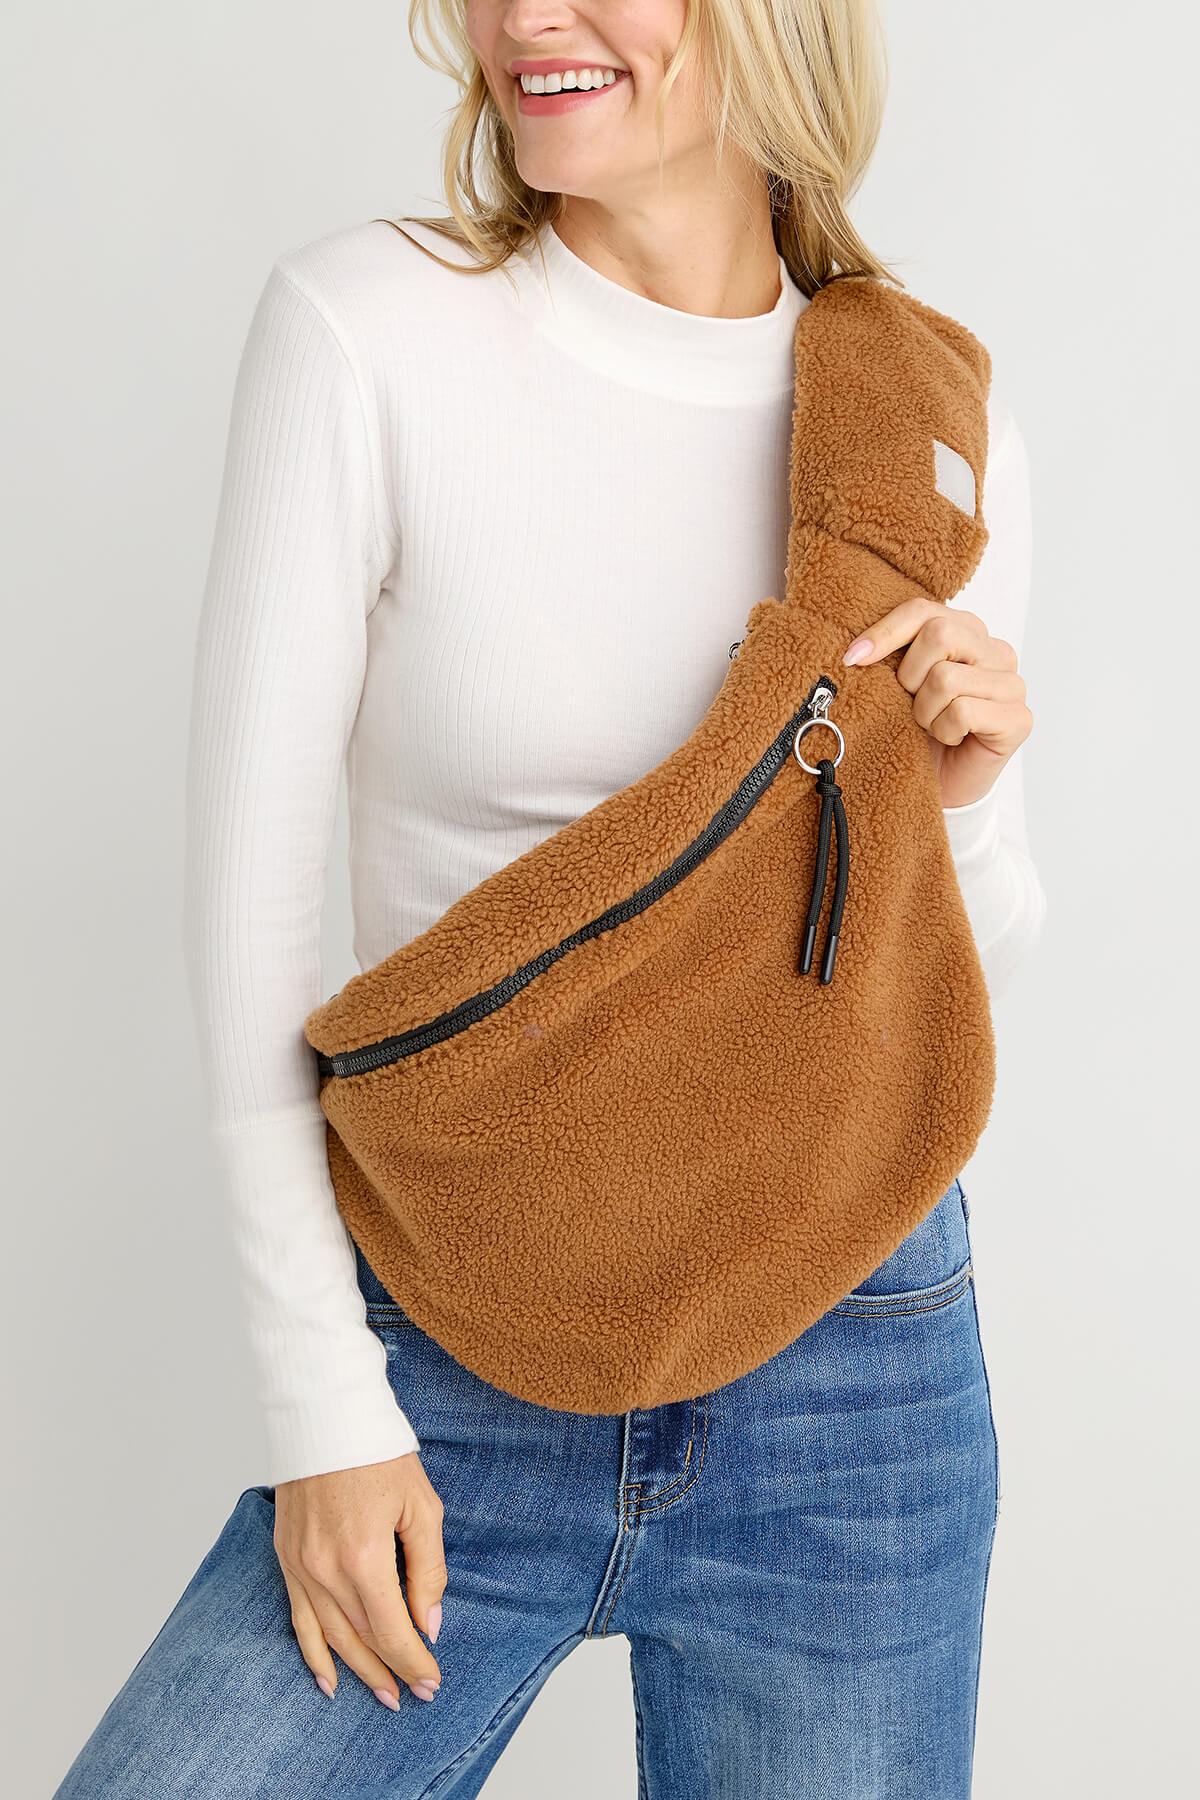 Hudson Sling Bag | Sling bag, Canvas sling bag, Leather sling bag